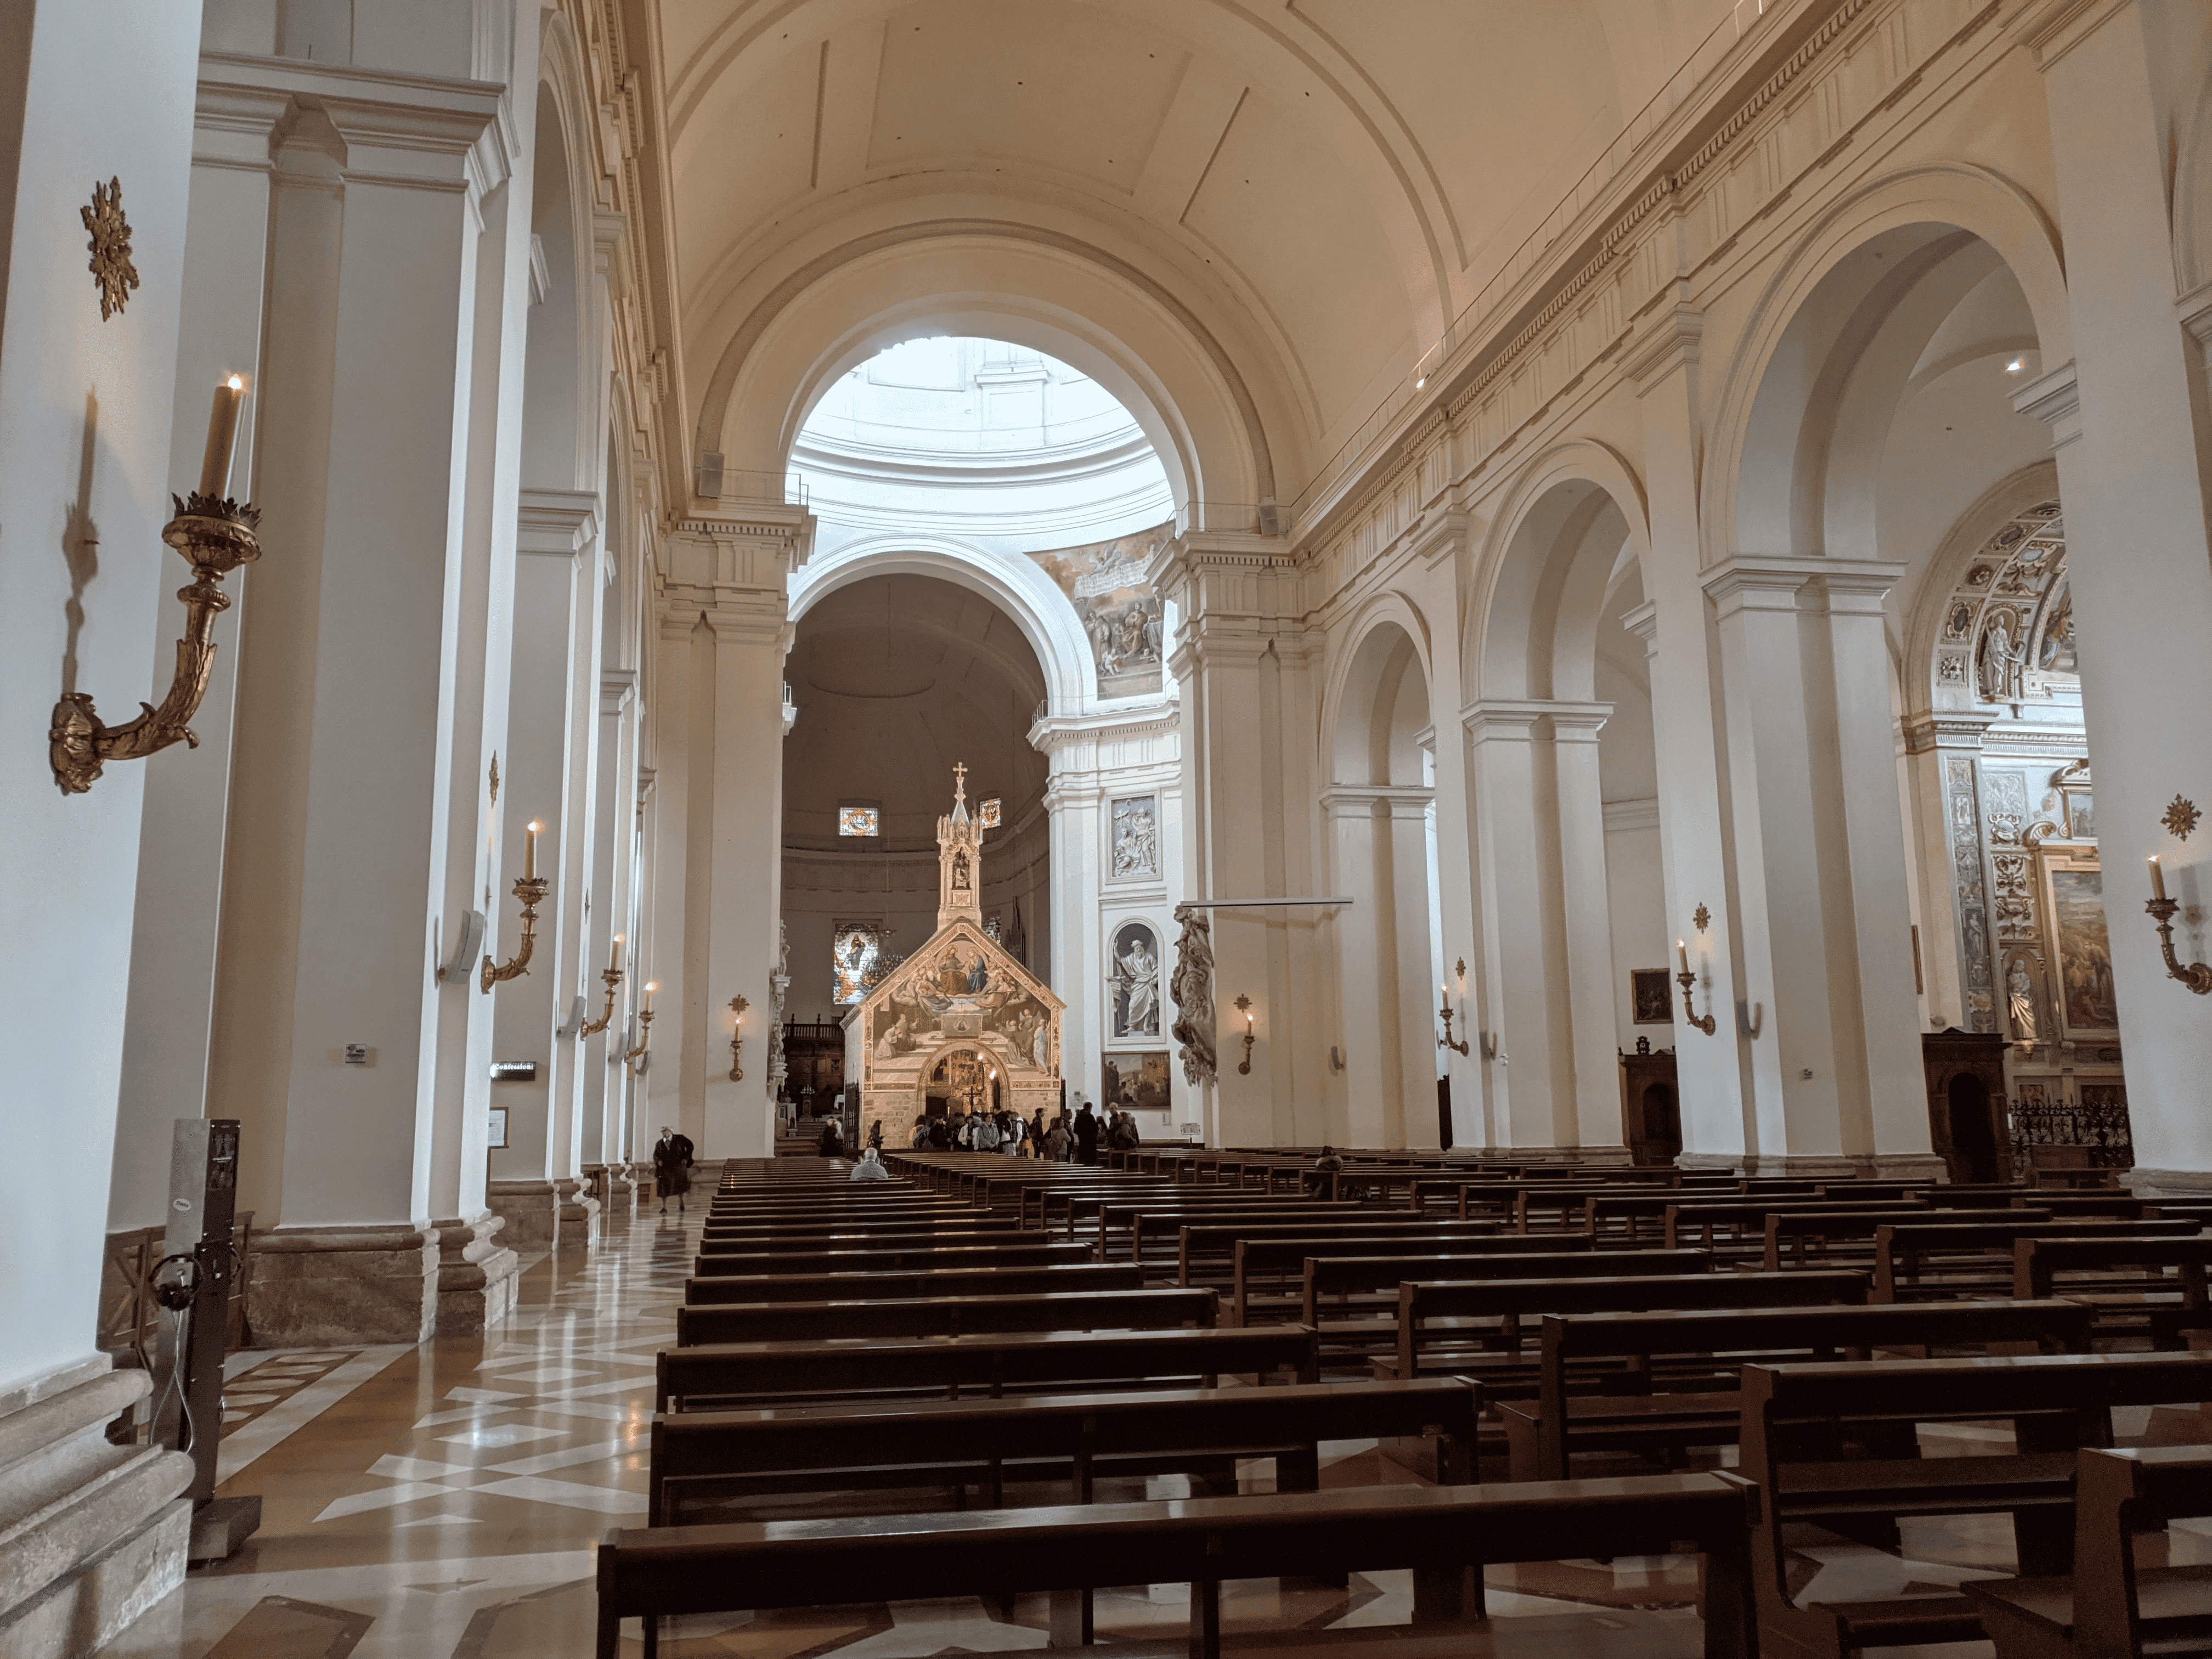 Interior de uma igreja com longos bancos de madeira alinhados, paredes e colunas brancas, e um altar ao fundo sob uma abóbada iluminada.